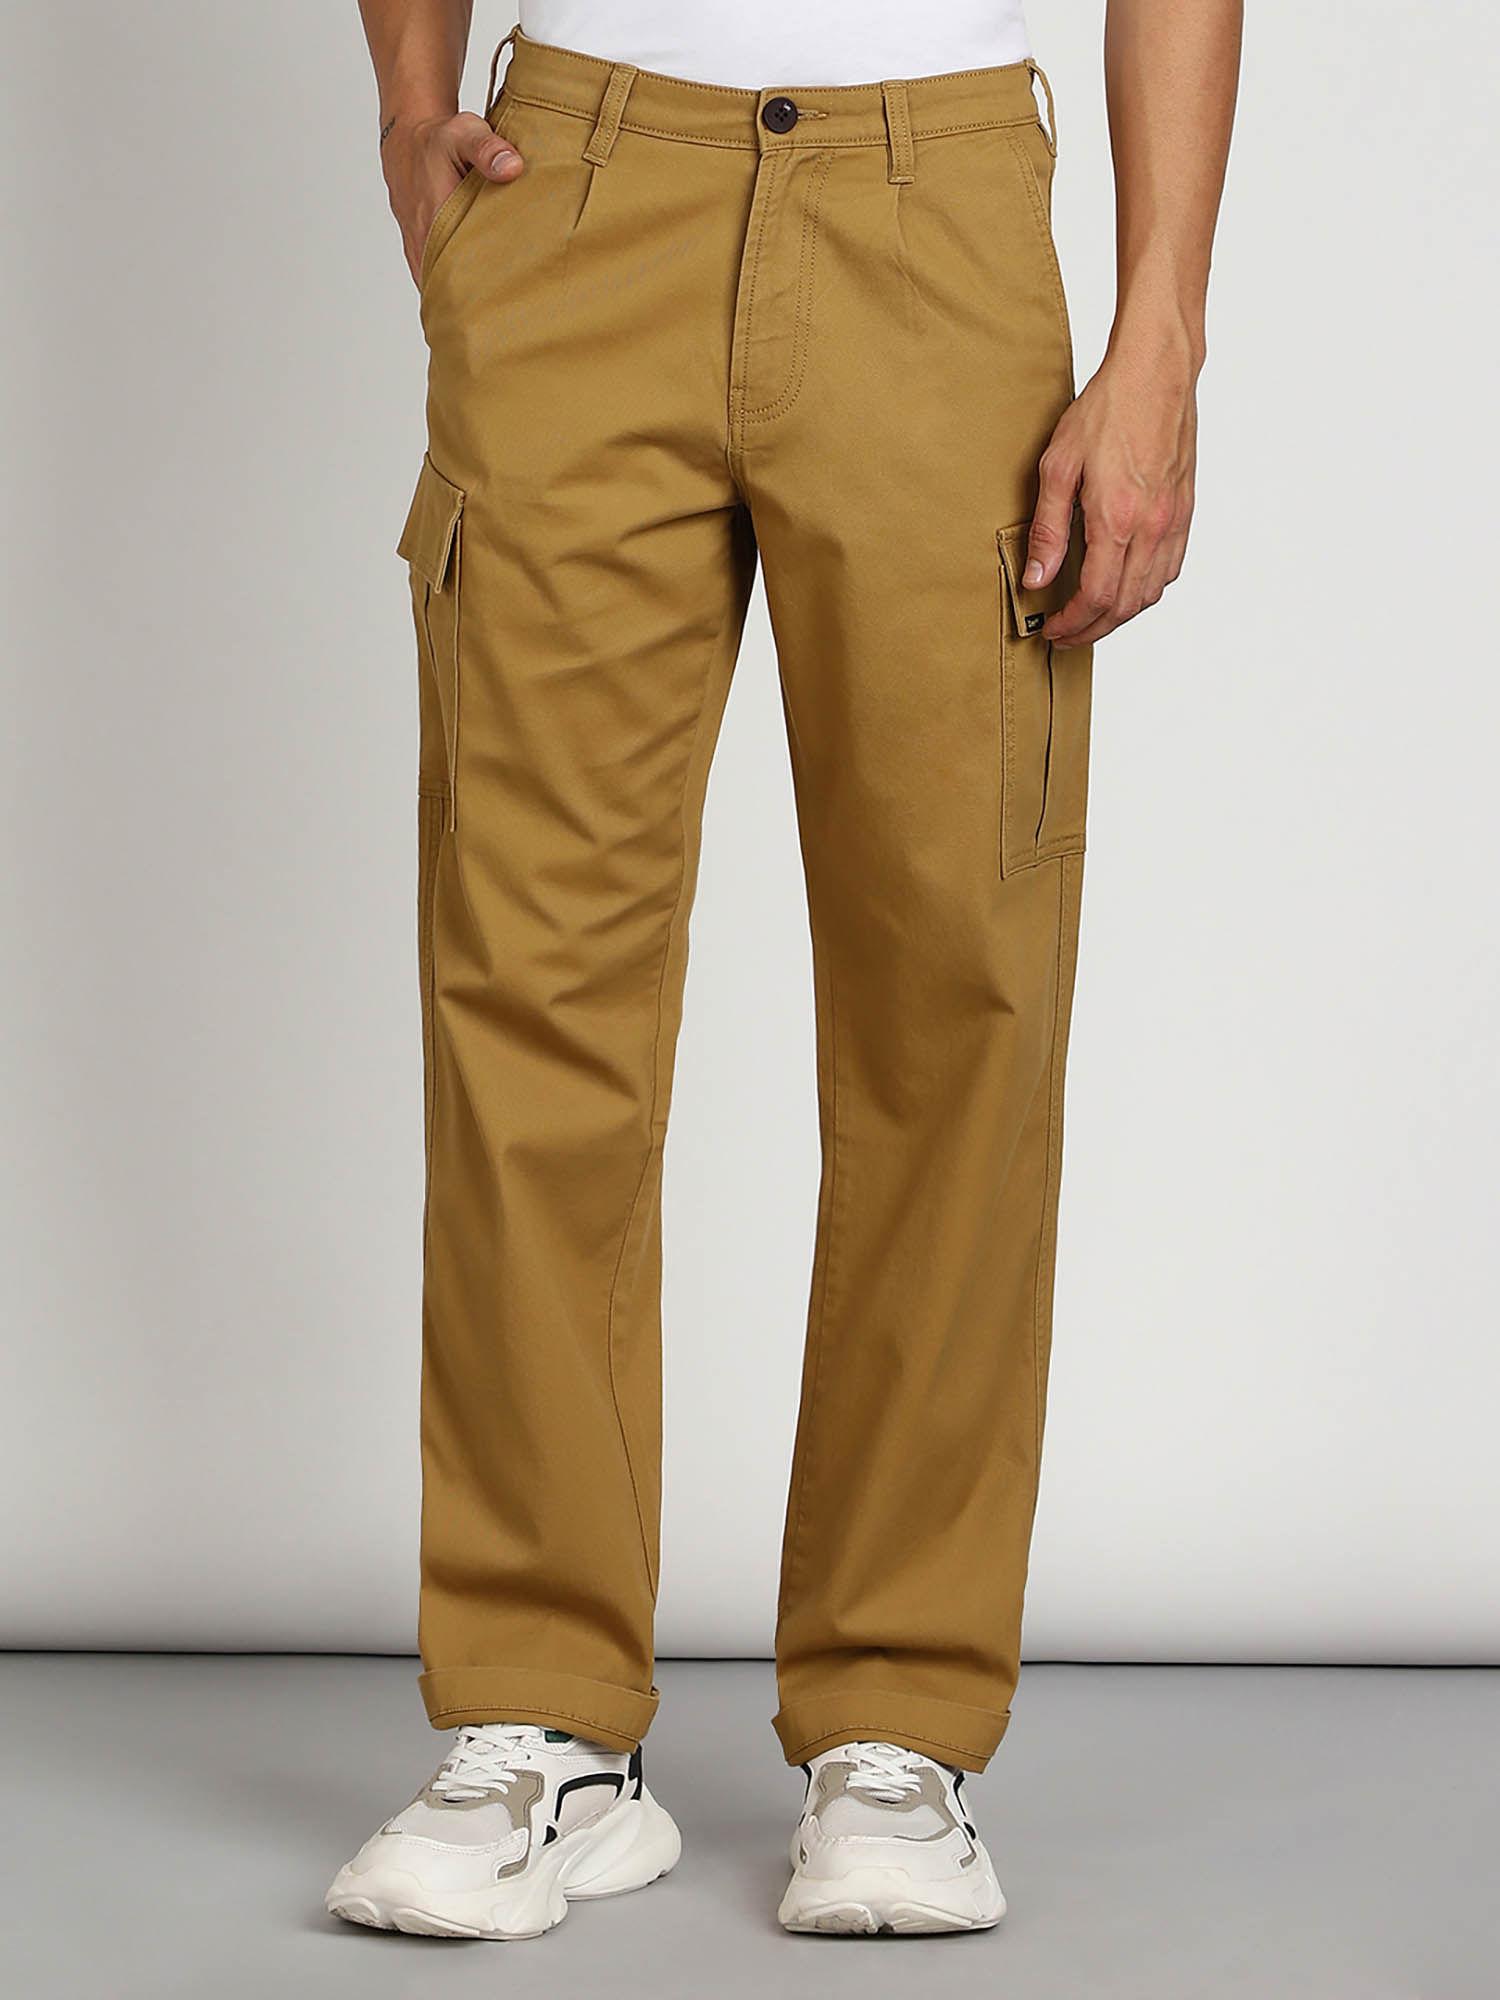 men's brown cargo trouser